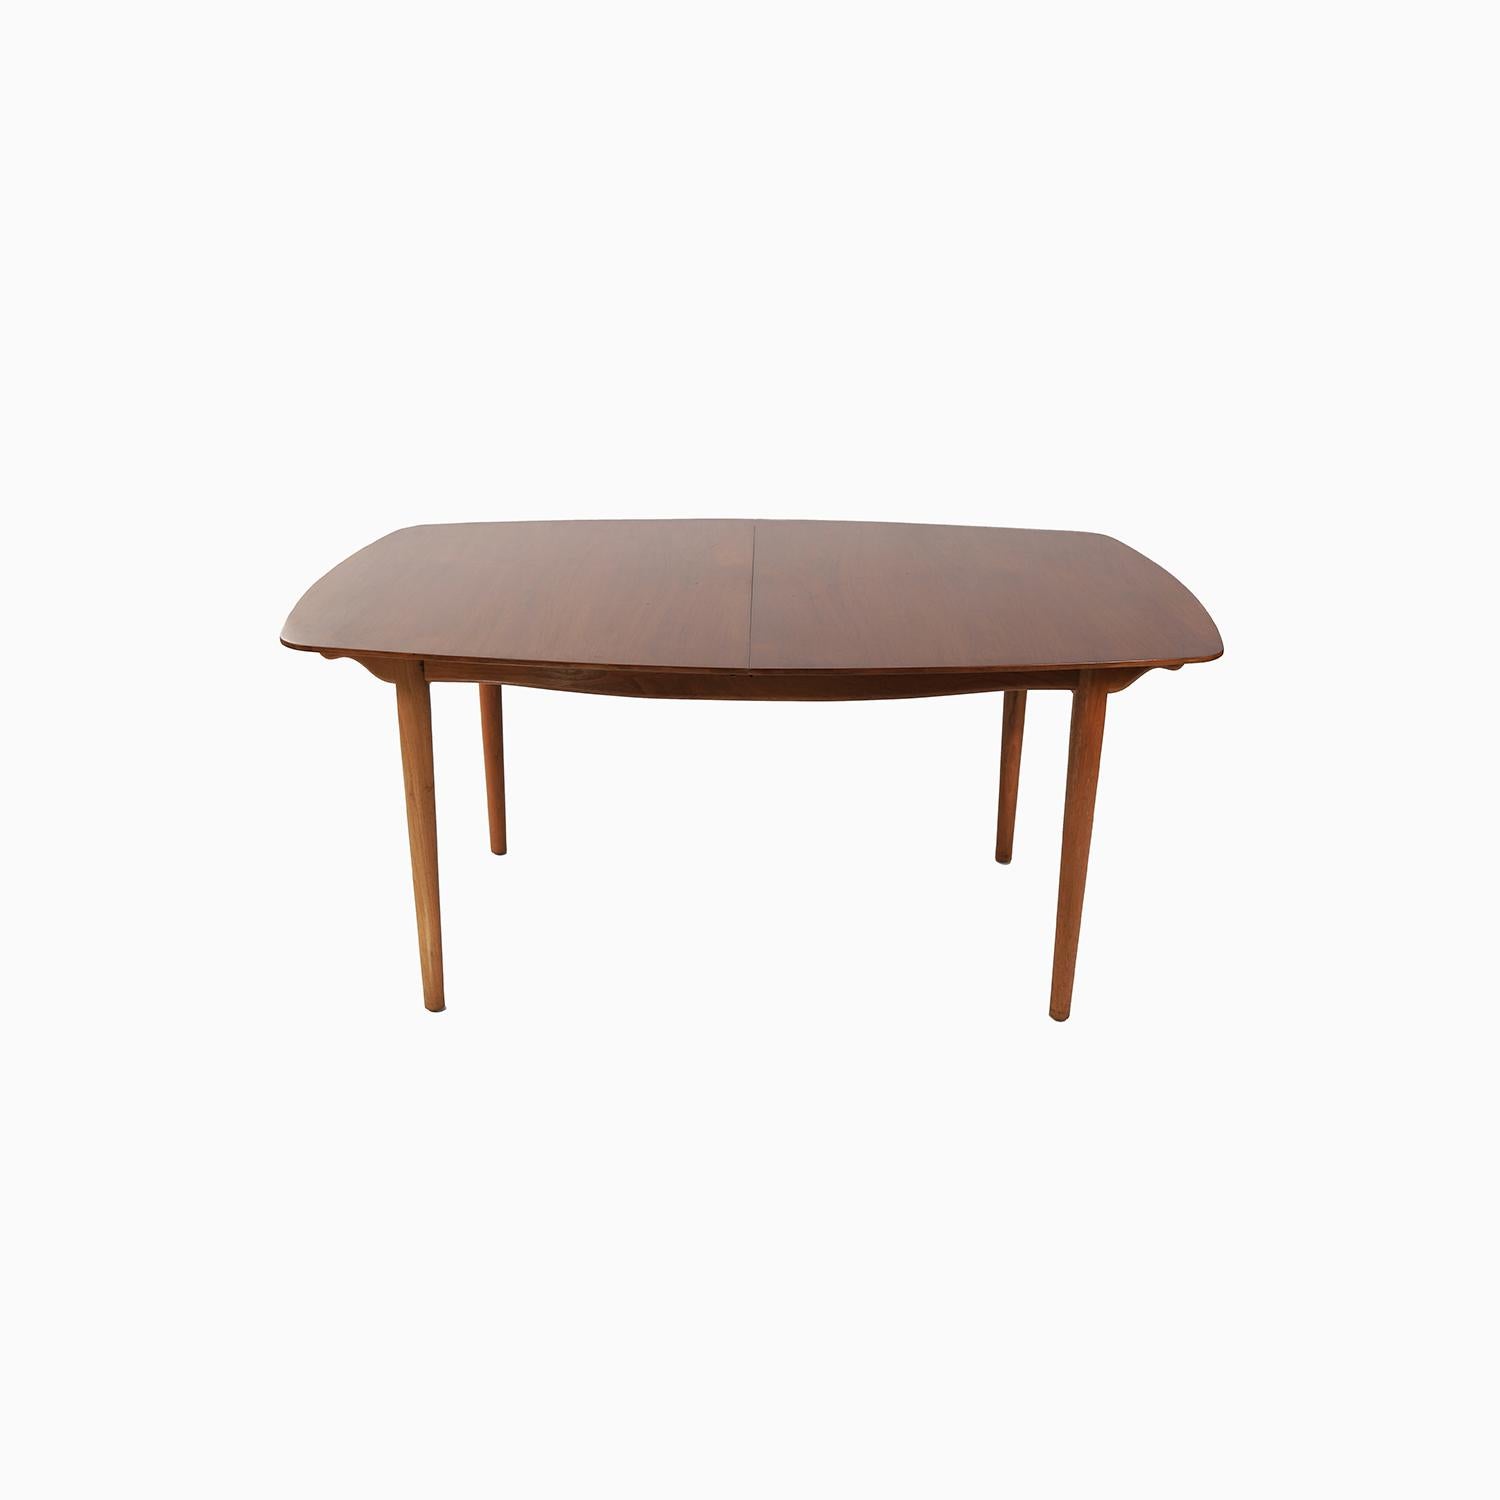 Ein dänischer Modern-Entwurf von Finn Juhl für den amerikanischen Hersteller Baker Furniture. Diese Beziehung zwischen Juhl und Baker katapultierte dänische moderne Möbel in die Häuser vieler Amerikaner. Ein wunderschönes, bootsförmiges Design aus